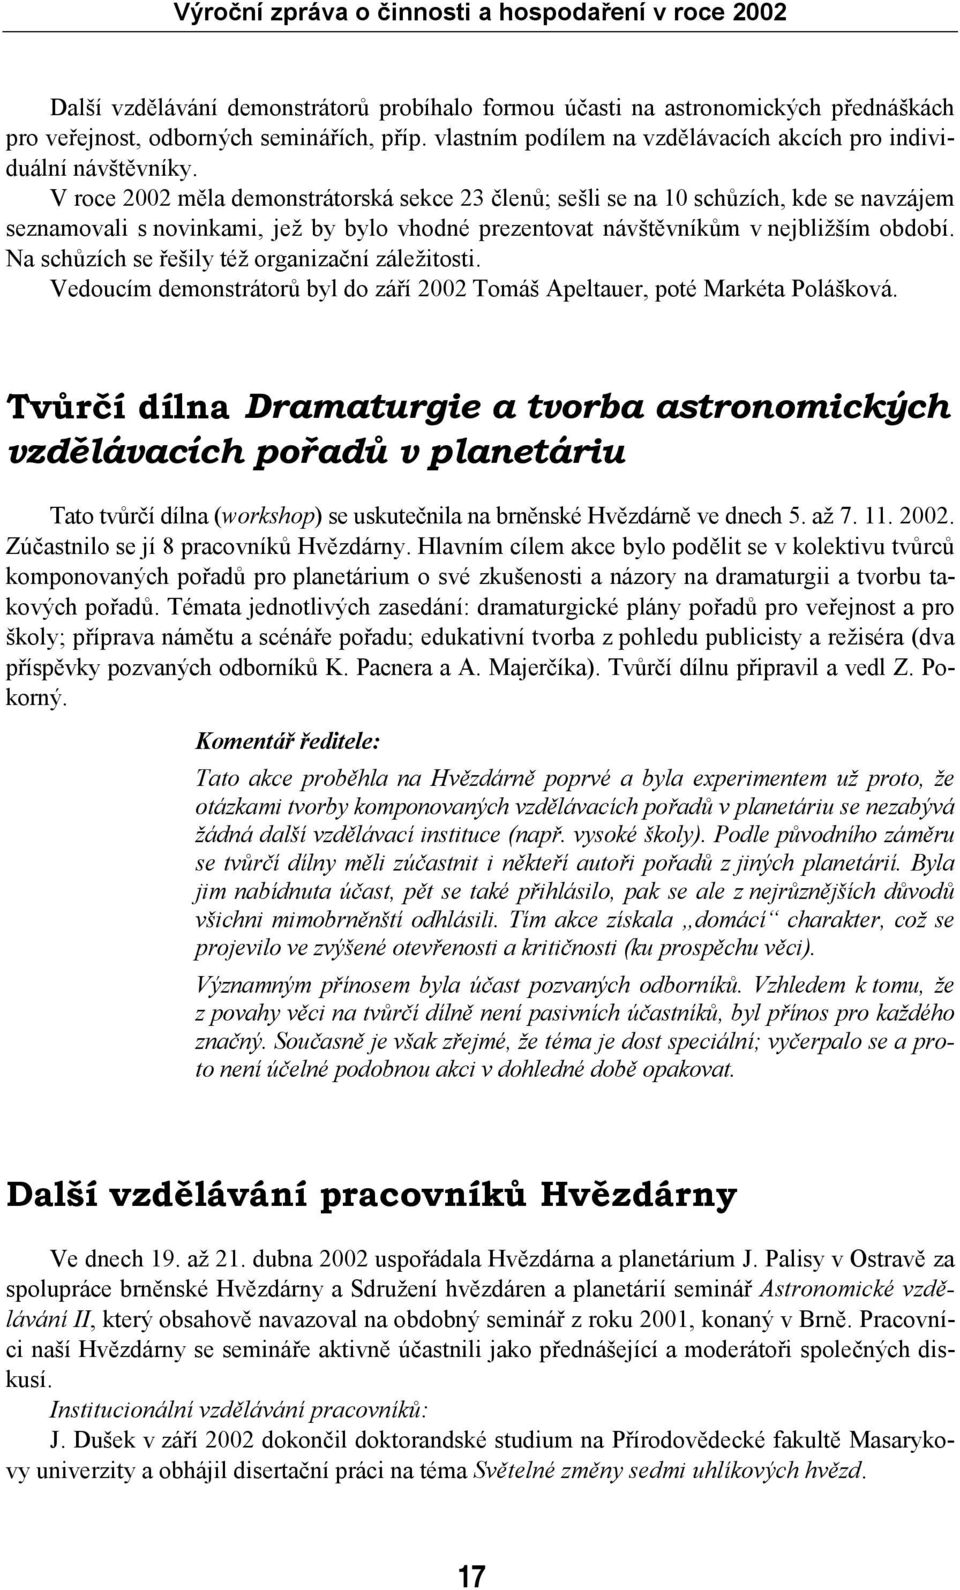 Na schůzích se řešily též organizační záležitosti. Vedoucím demonstrátorů byl do září 2002 Tomáš Apeltauer, poté Markéta Polášková.